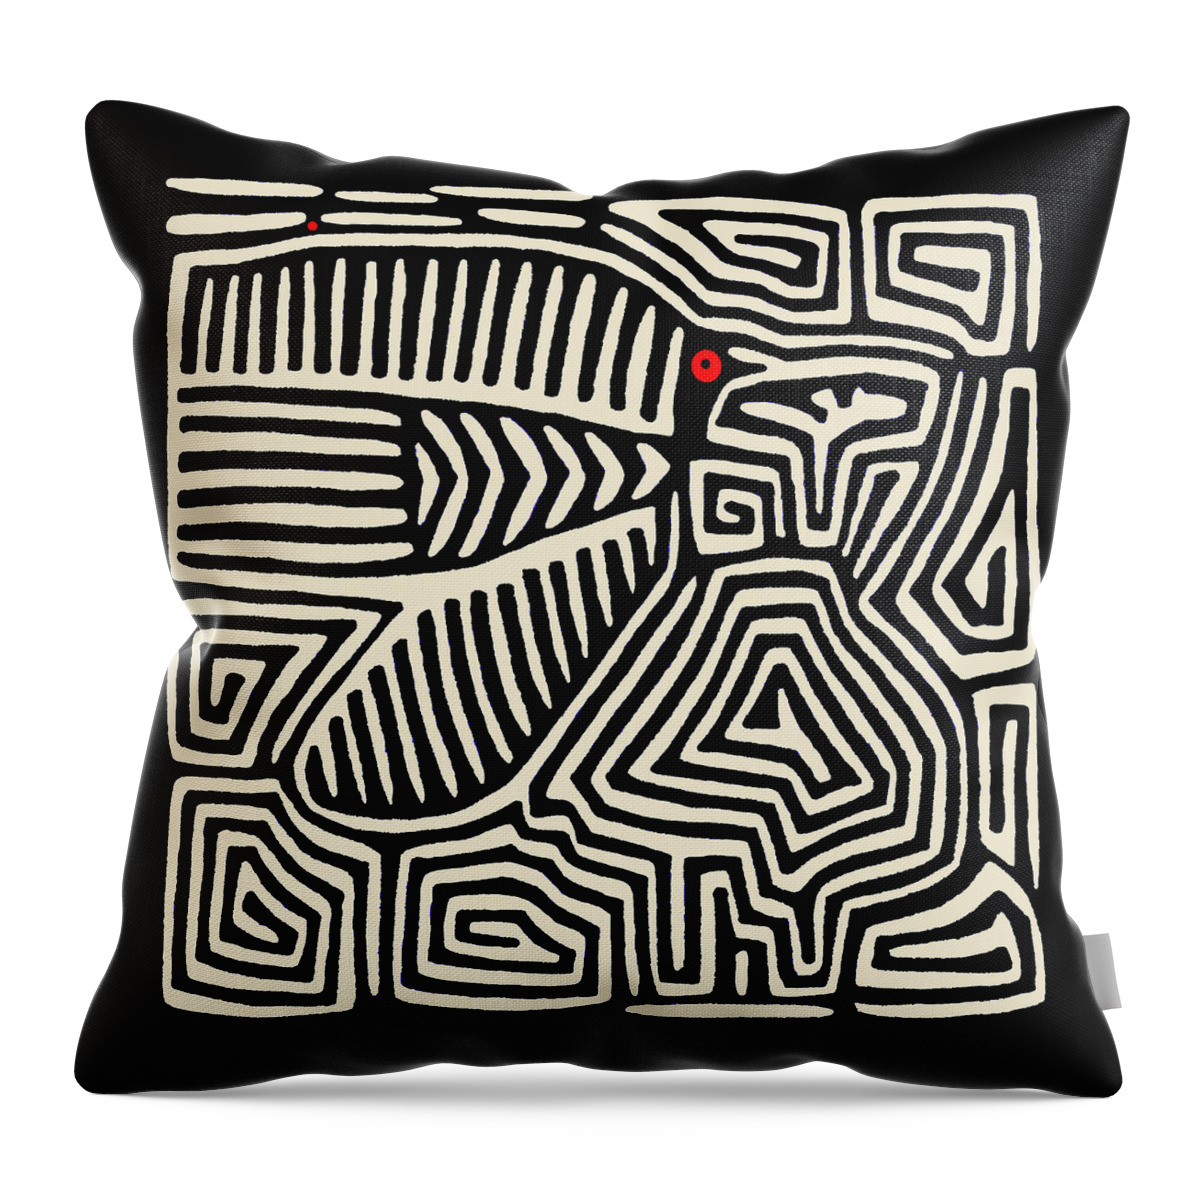 Pajaro Throw Pillow featuring the digital art Kuna Indian Pajaro by Vagabond Folk Art - Virginia Vivier